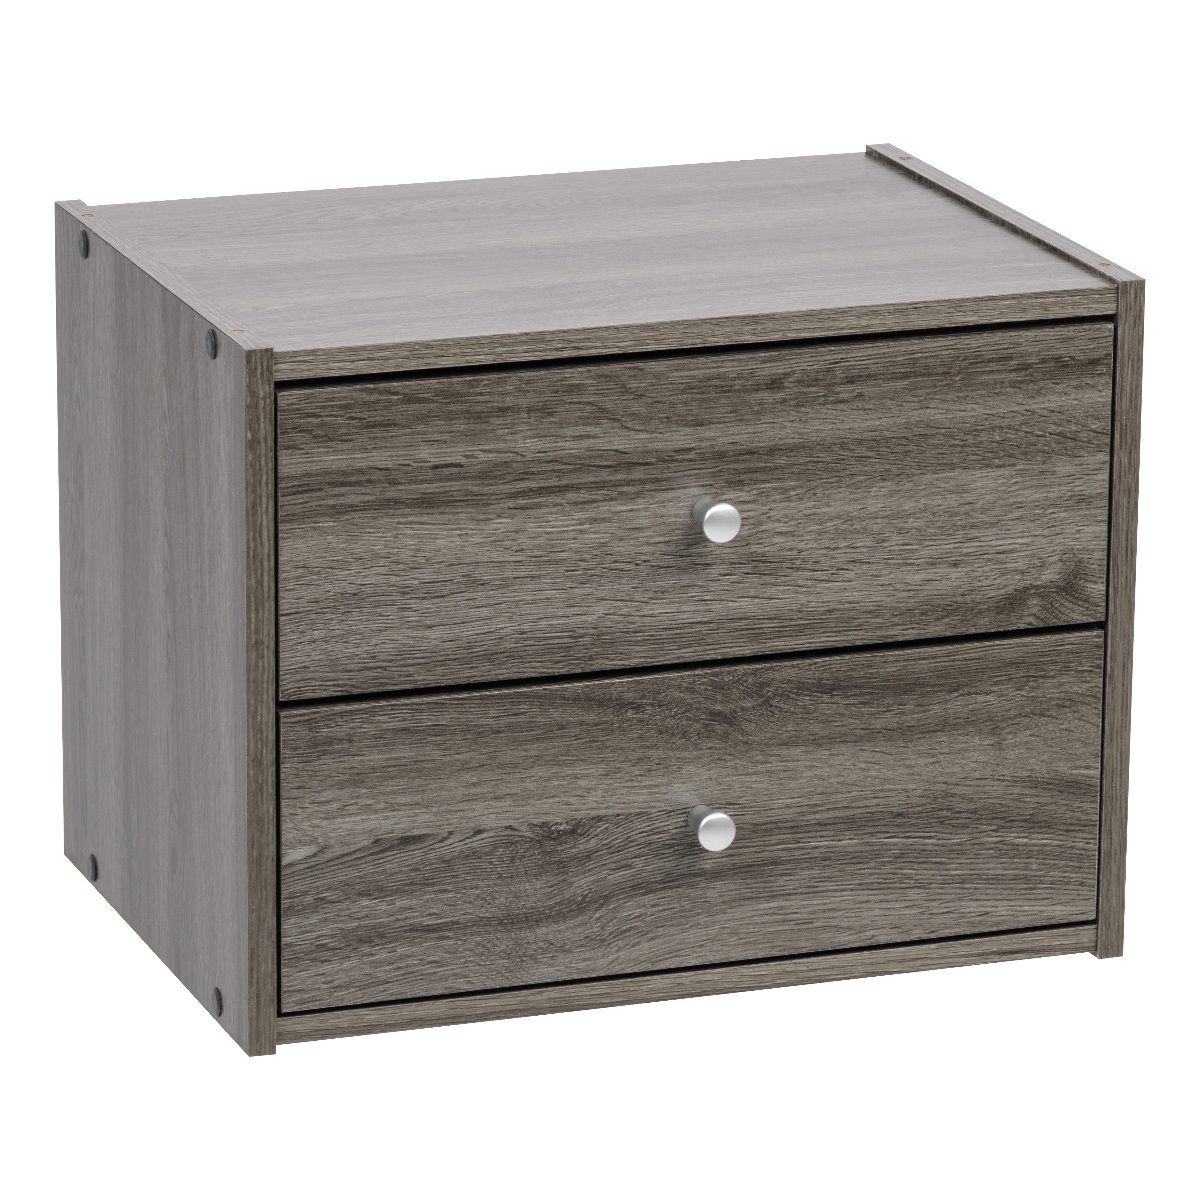 IRIS Tachi Series Modular Wood Stacking Storage Drawer Box